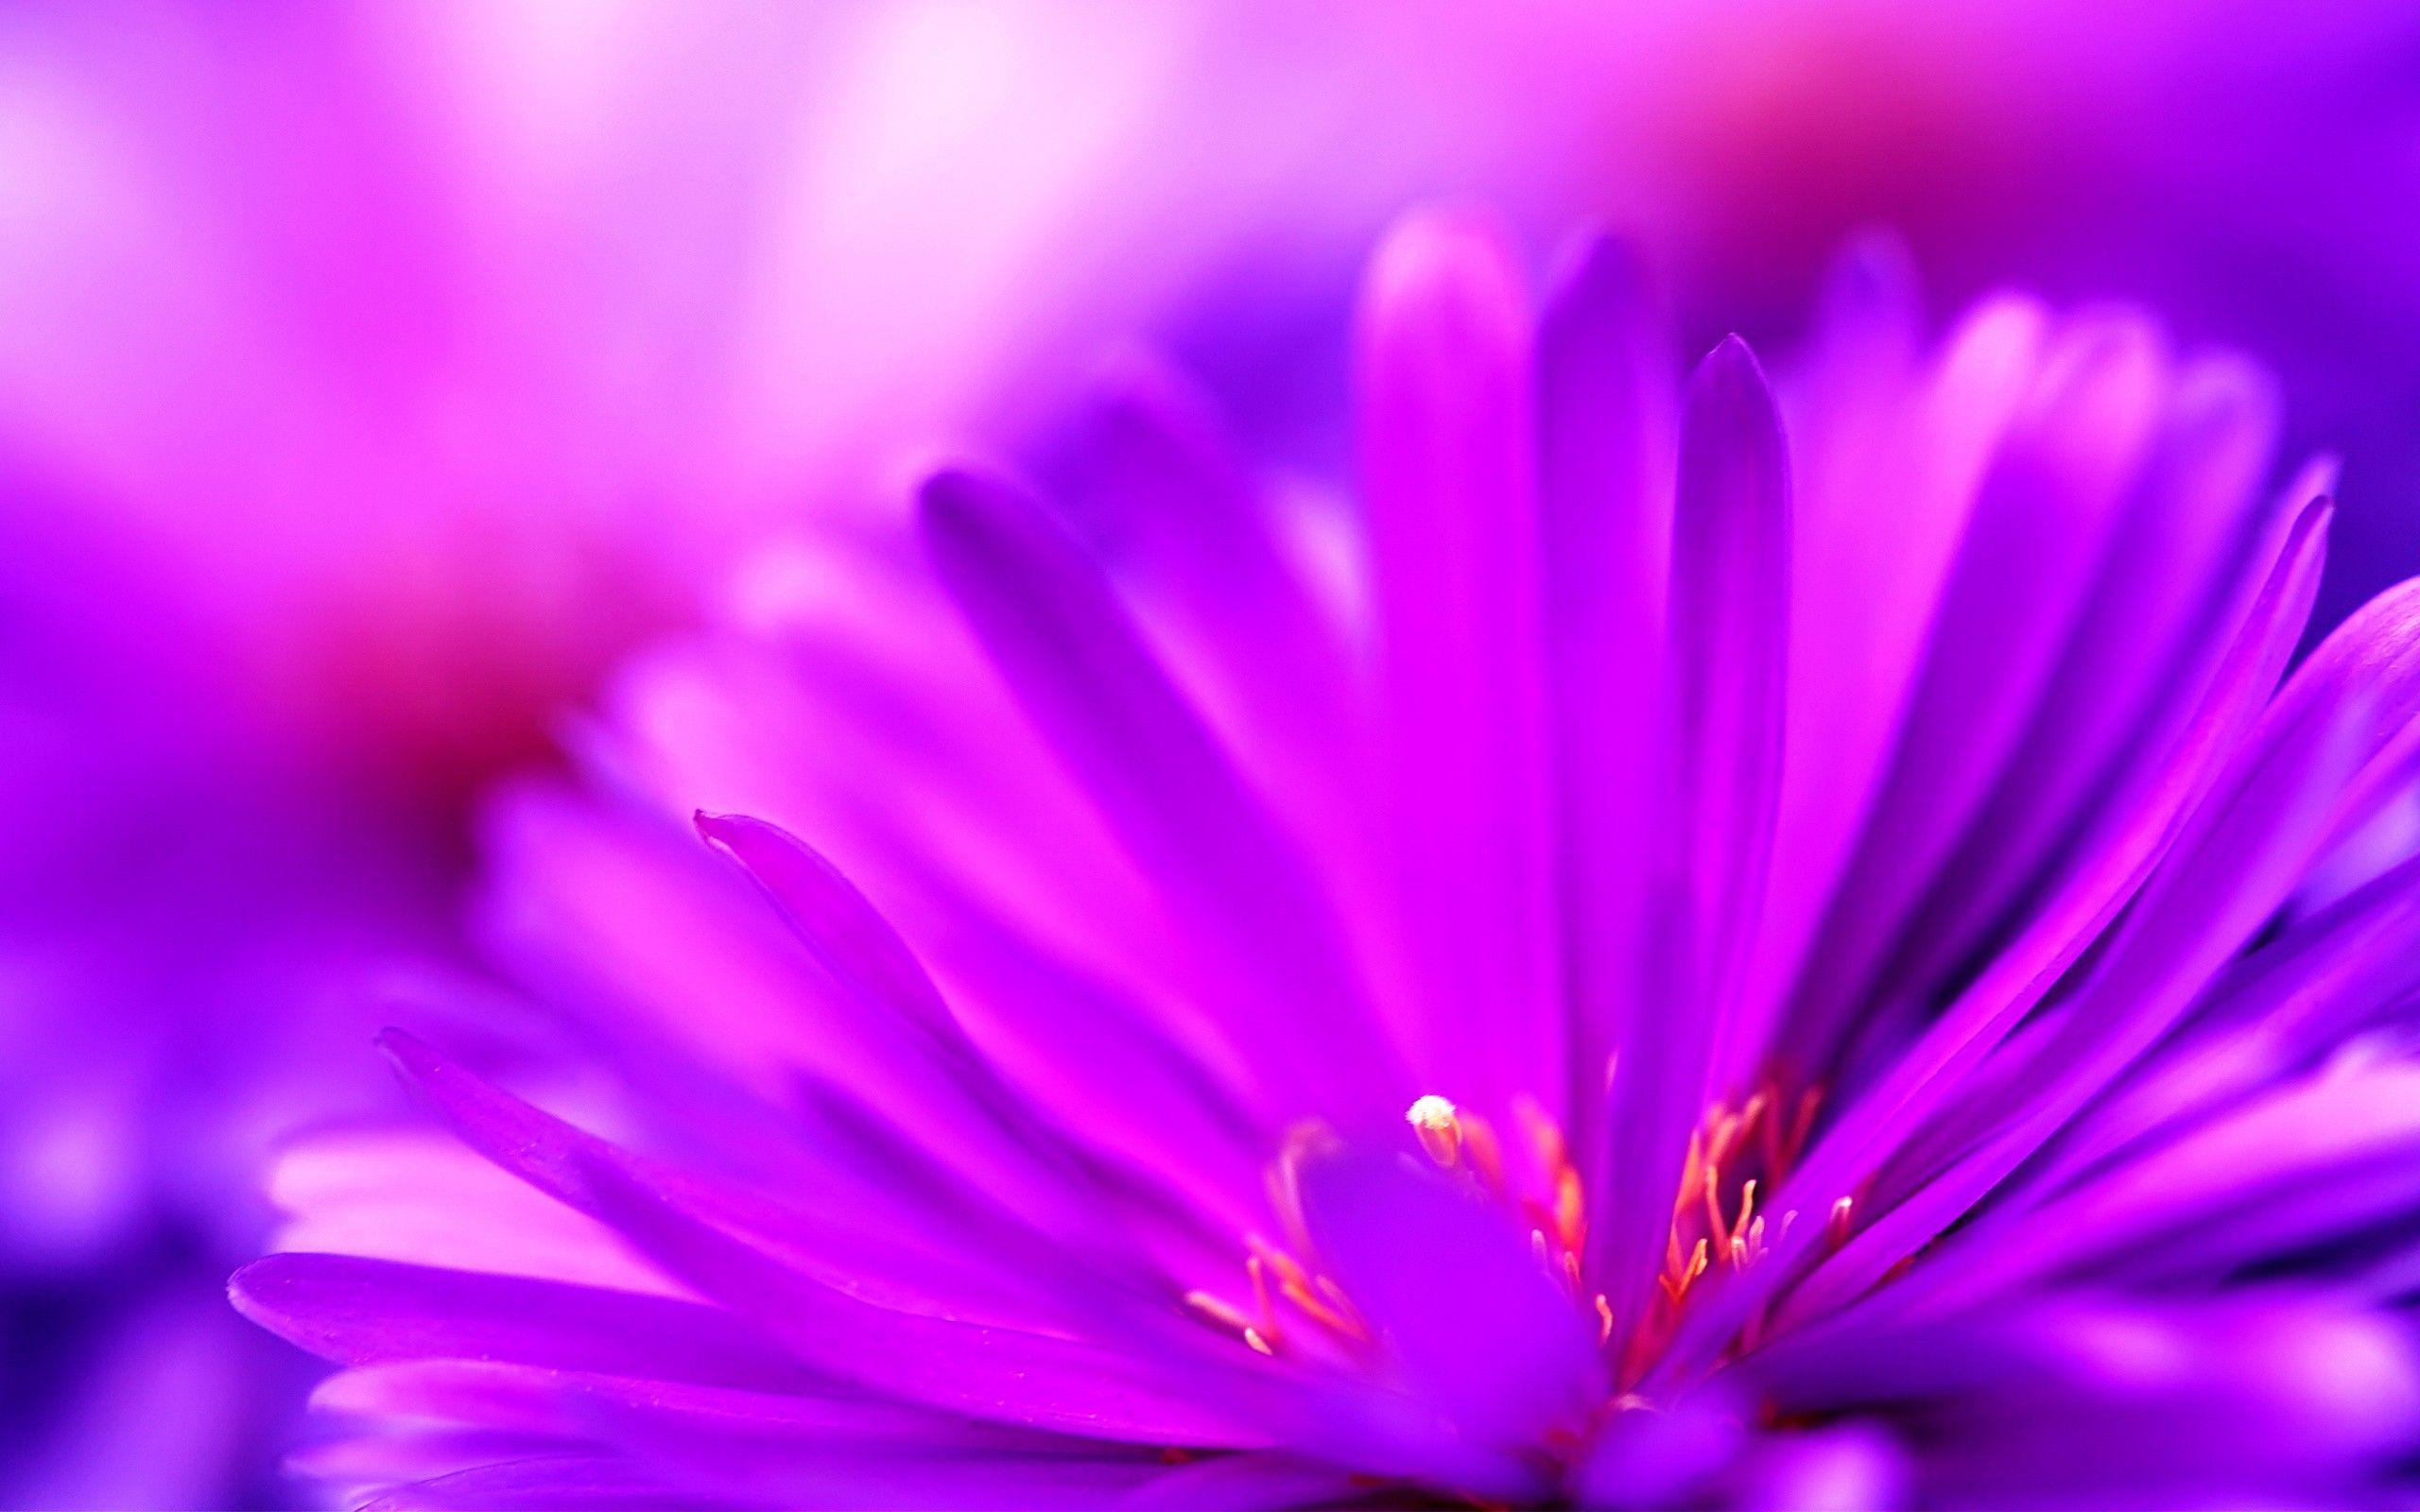 Cute Purple Flower